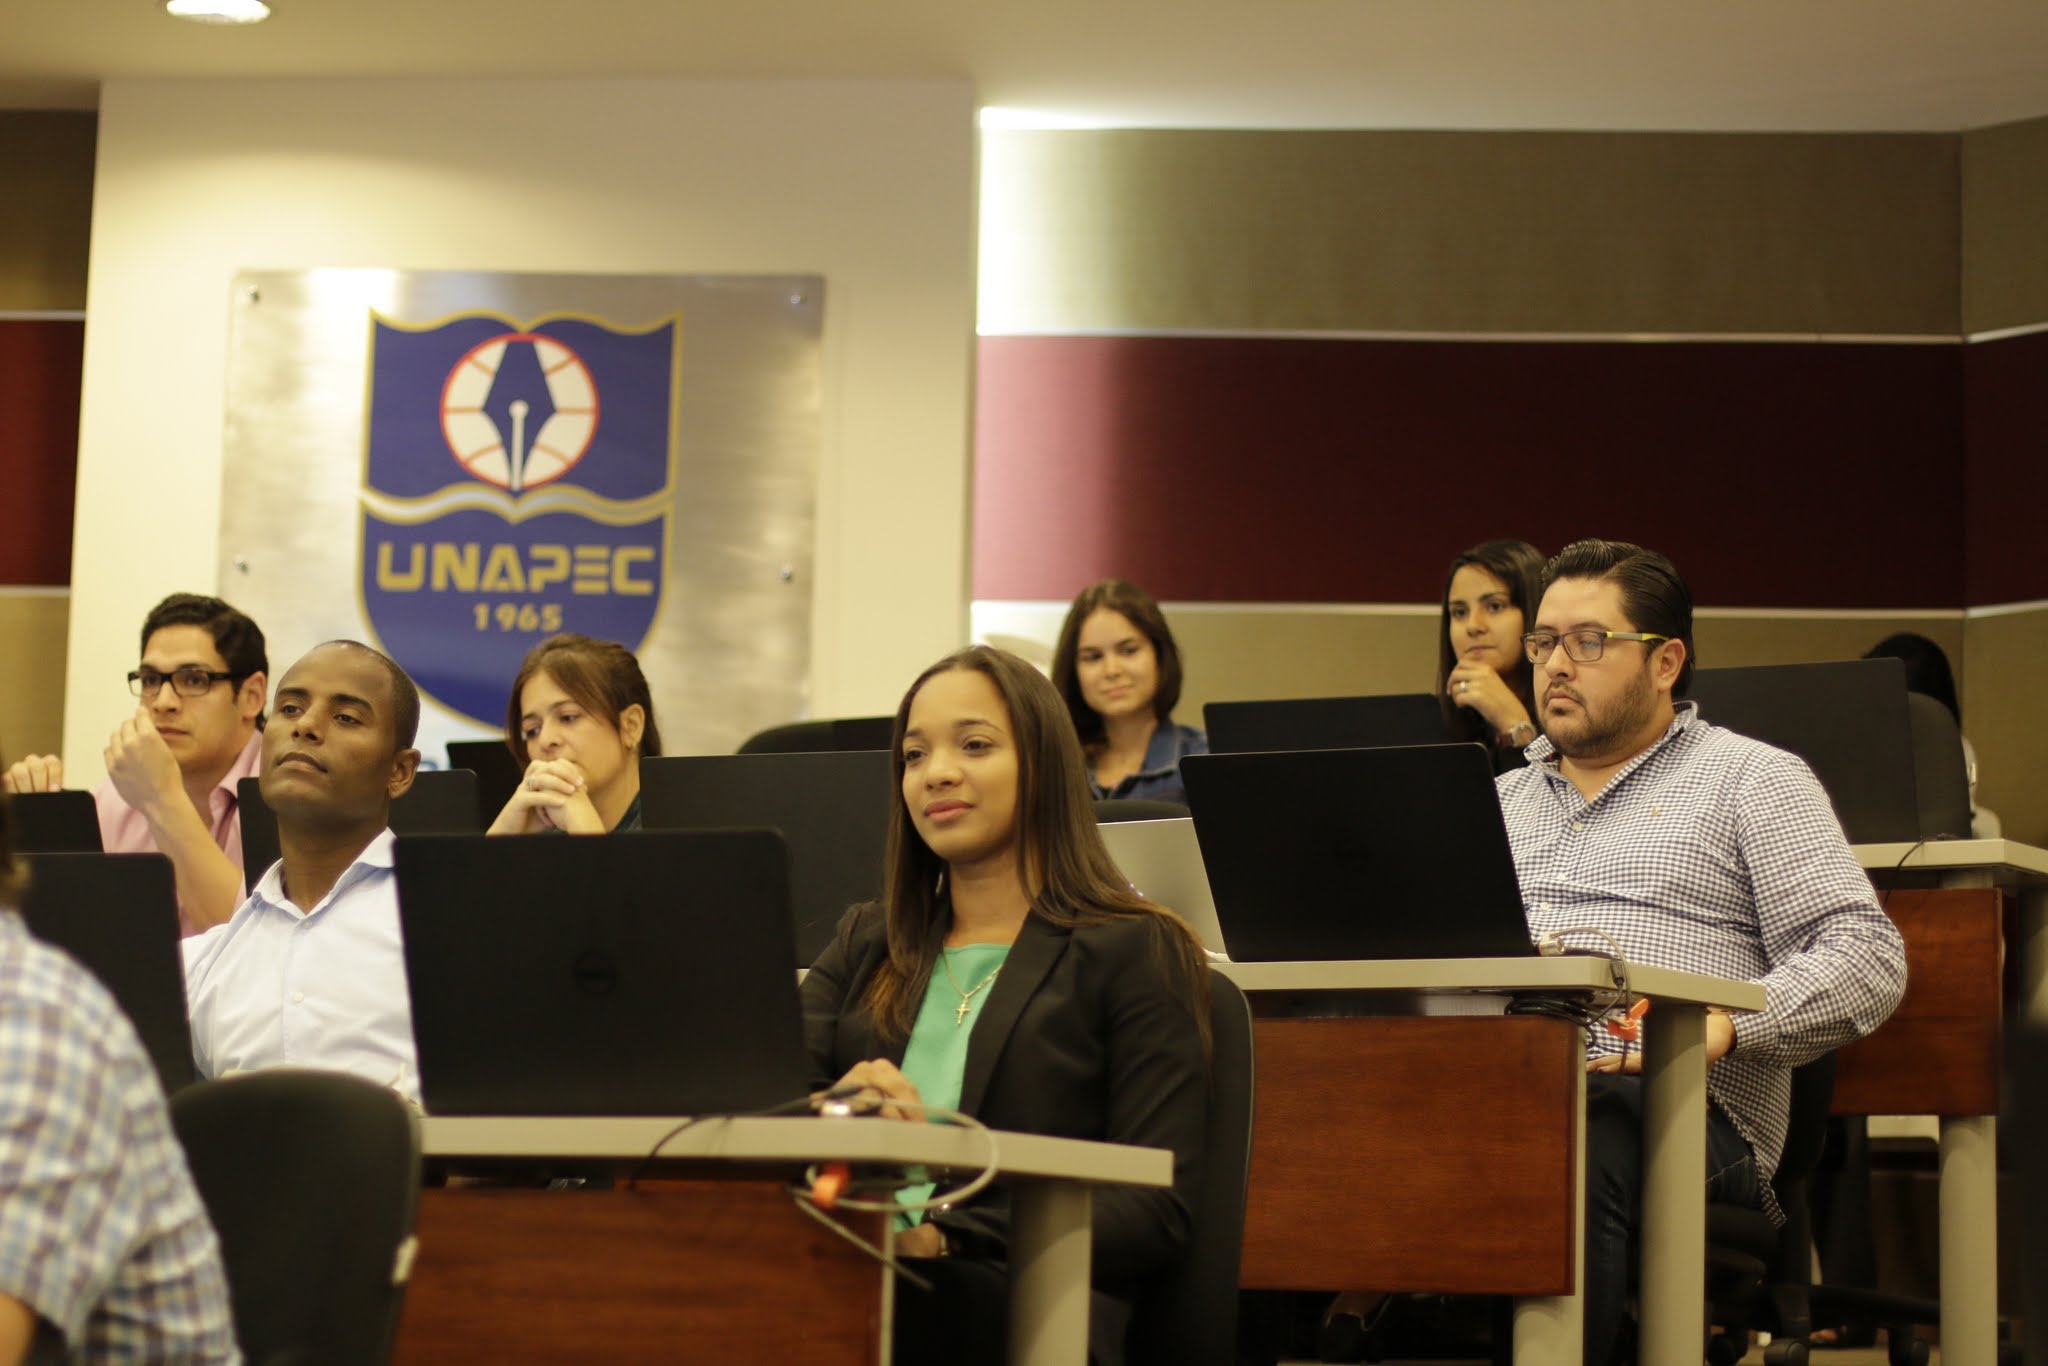 El diplomado está siendo impartido en el Salón de videoconferencias de UNAPEC.